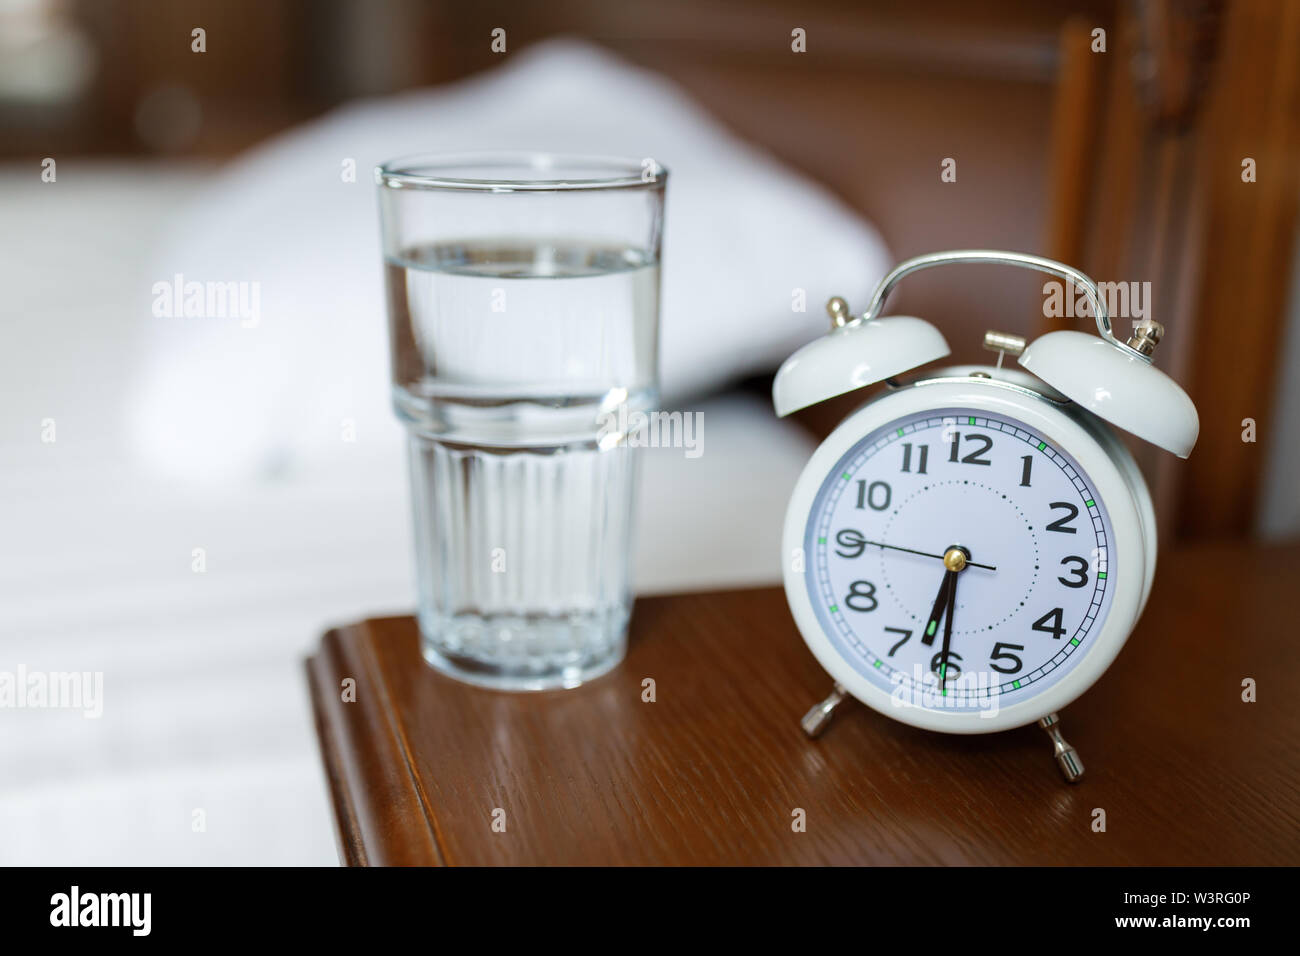 Un reloj despertador blanco y un vaso de agua en una mesita de madera. Foto de stock